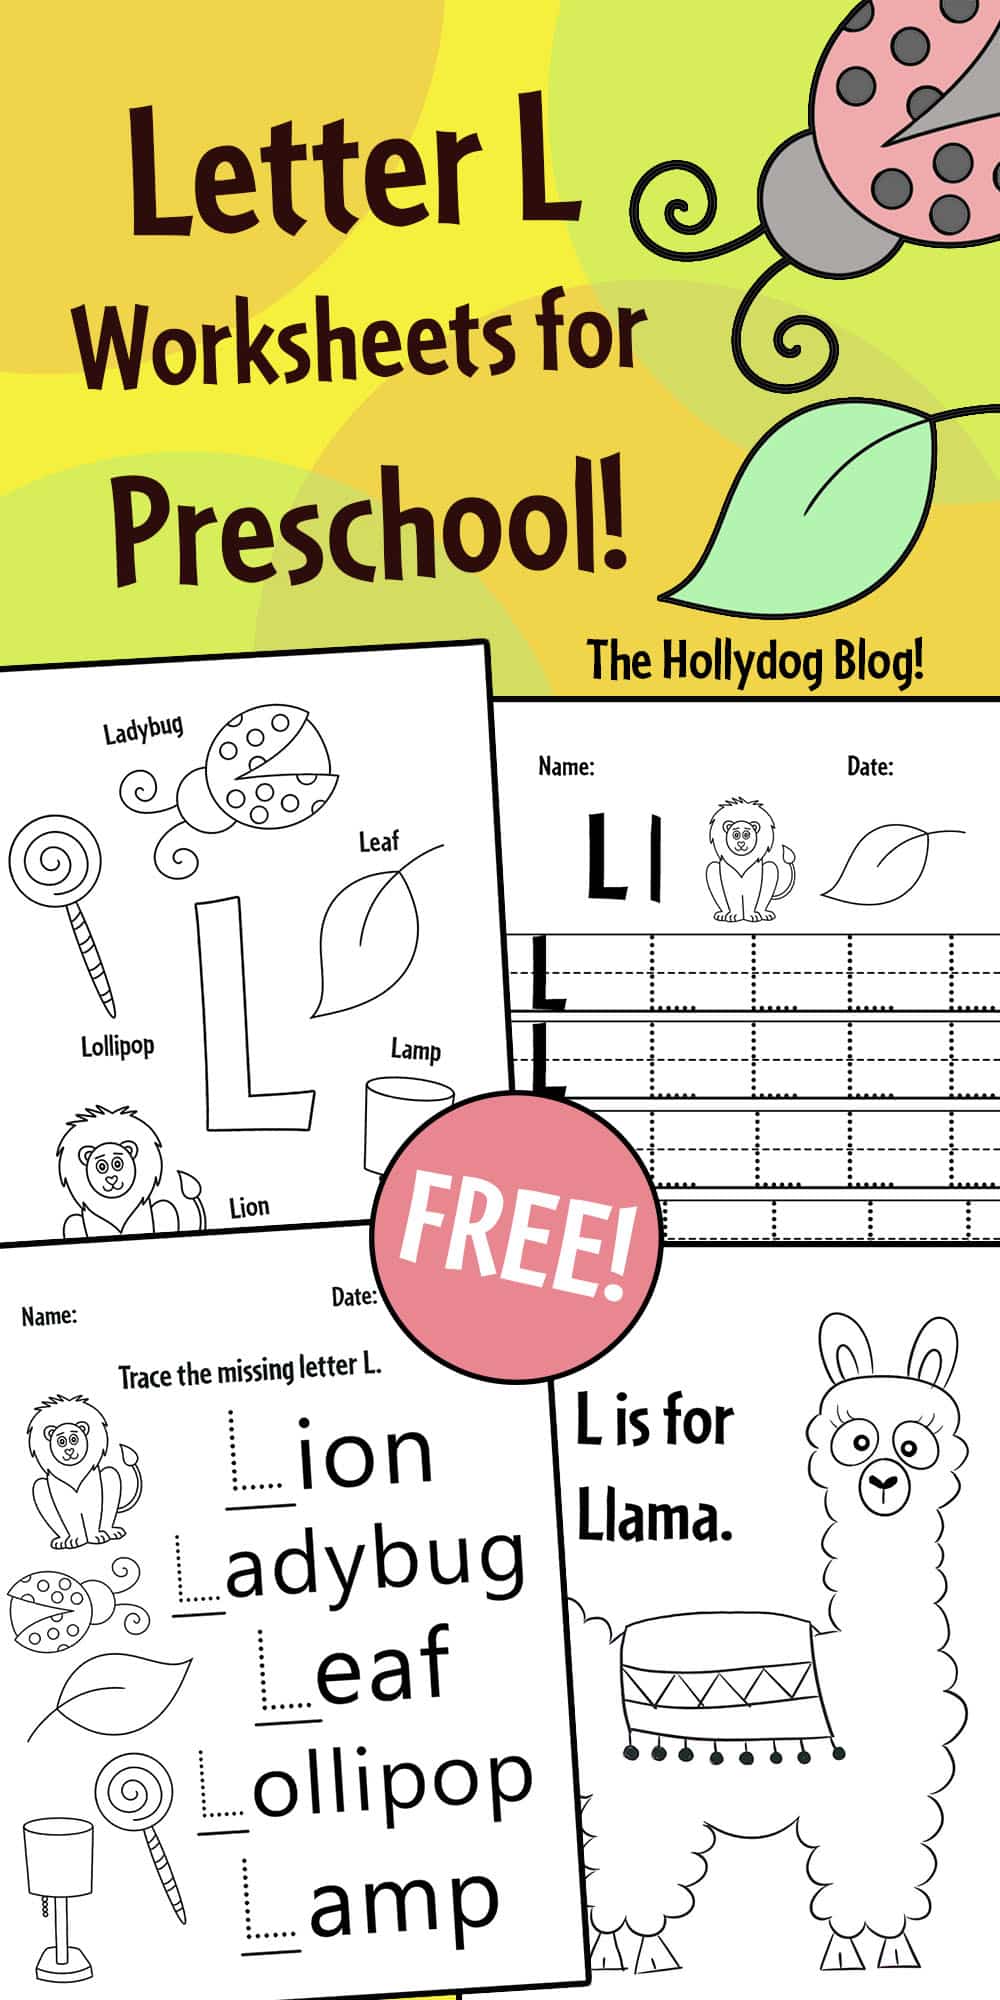 Free Letter L Worksheets for Preschool